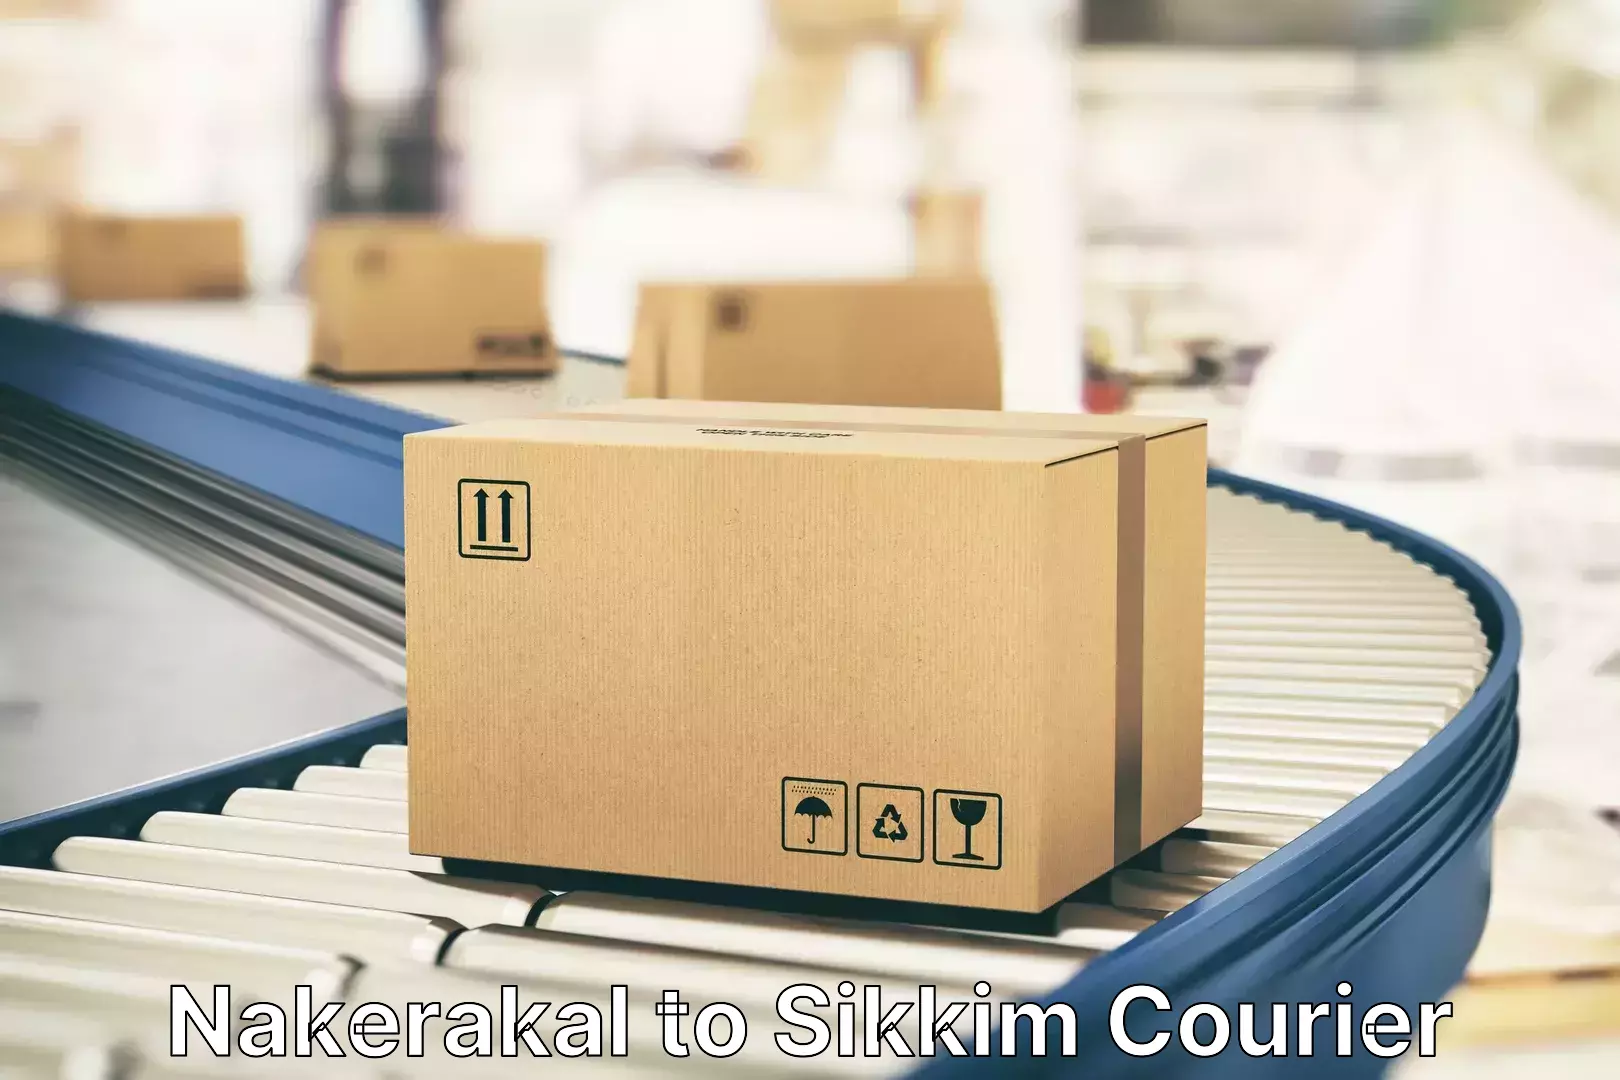 Personalized luggage shipping Nakerakal to Singtam